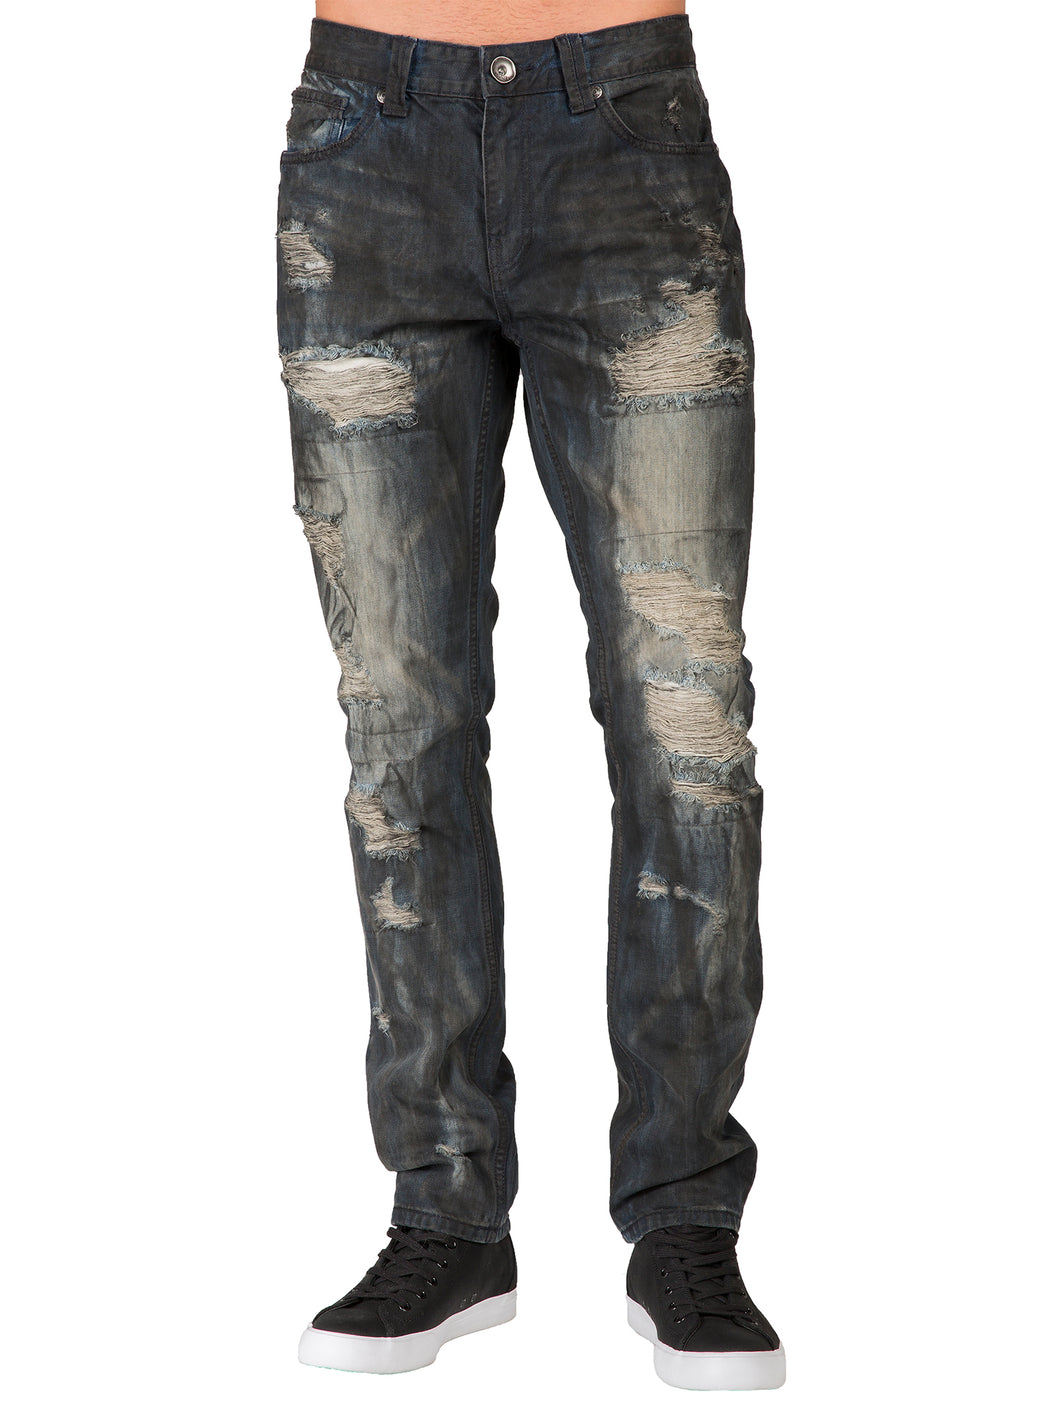 Men's Premium Denim Jeans Slim Straight Leg Destroyed Dark Blue Smudging